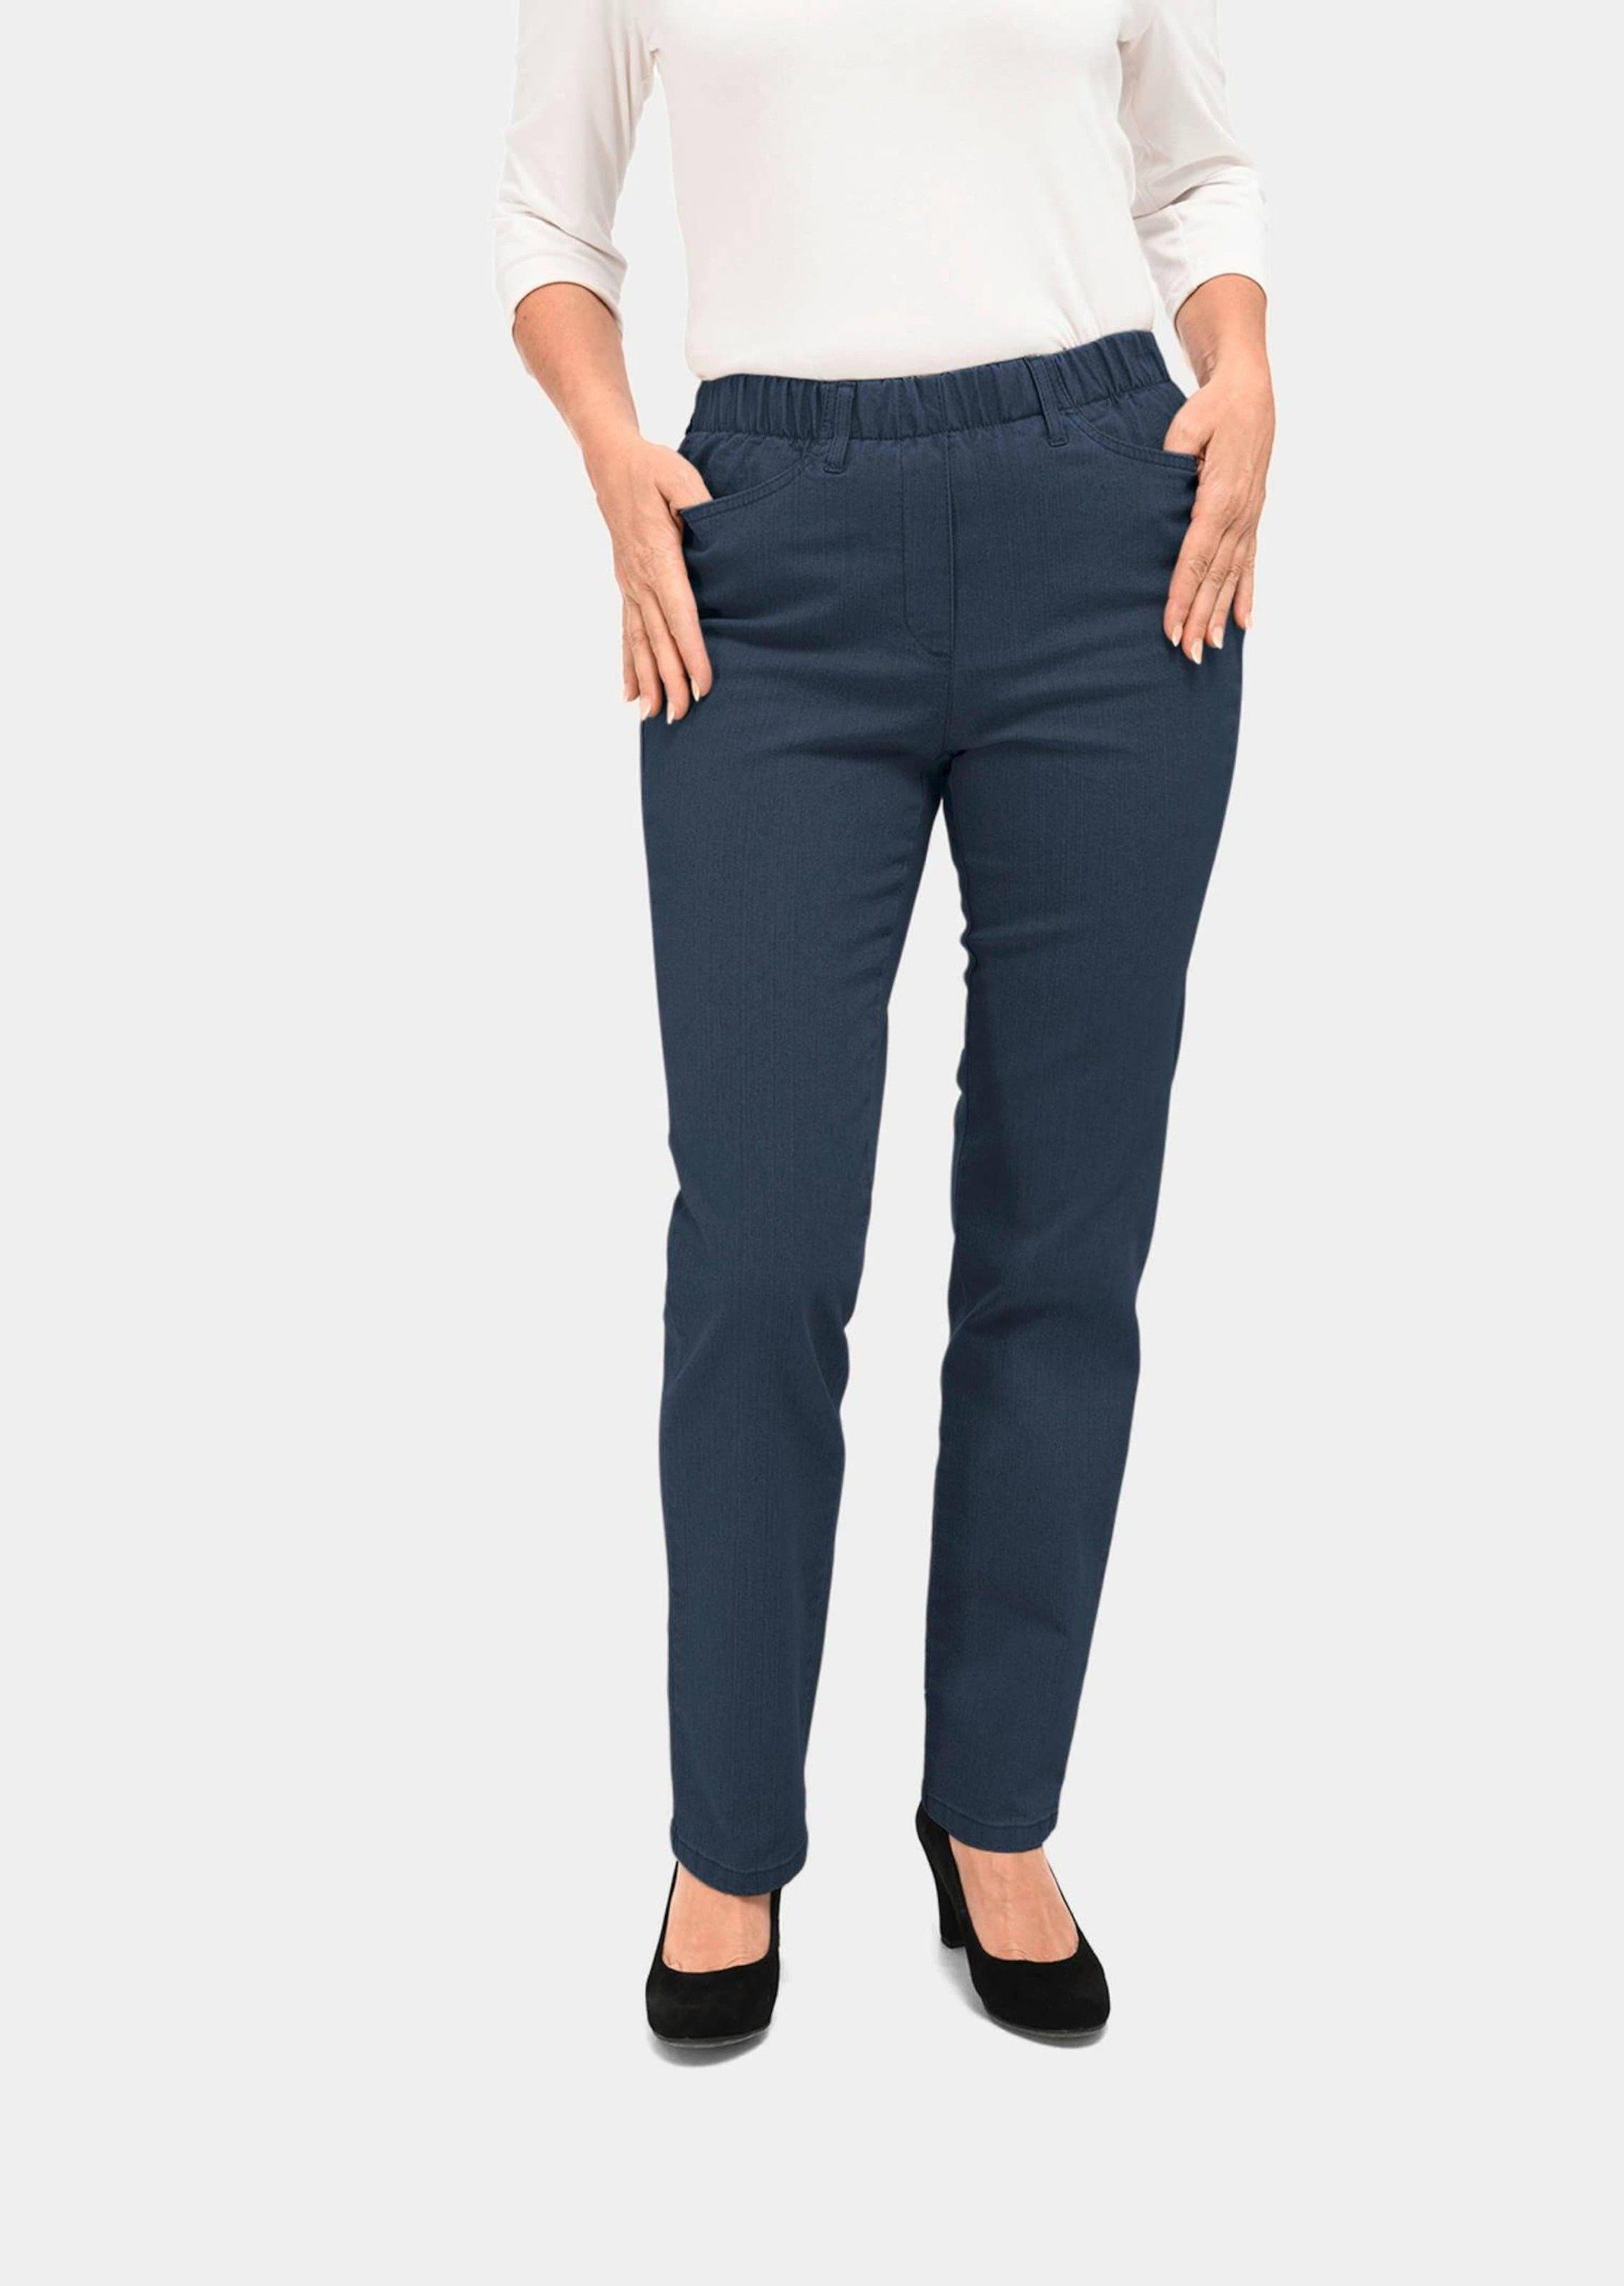 GOLDNER Bequeme Jeans Kurzgröße: Klassische Jeansschlupfhose LOUISA dunkelblau